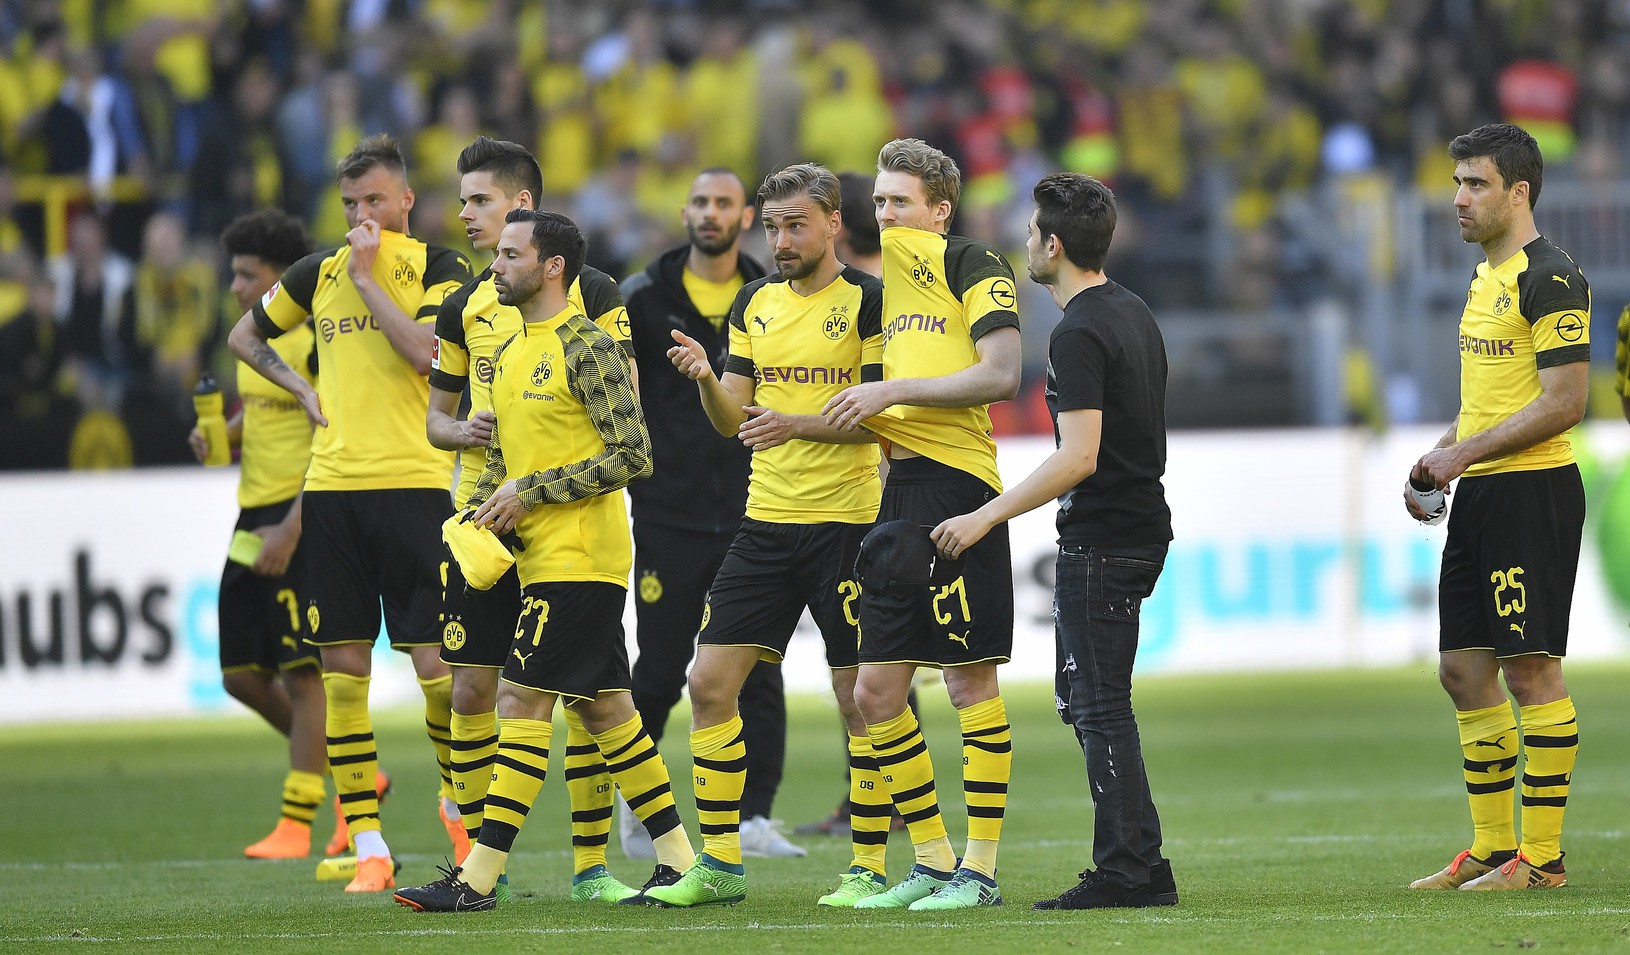 Tím Dortmundu po šokujúcej